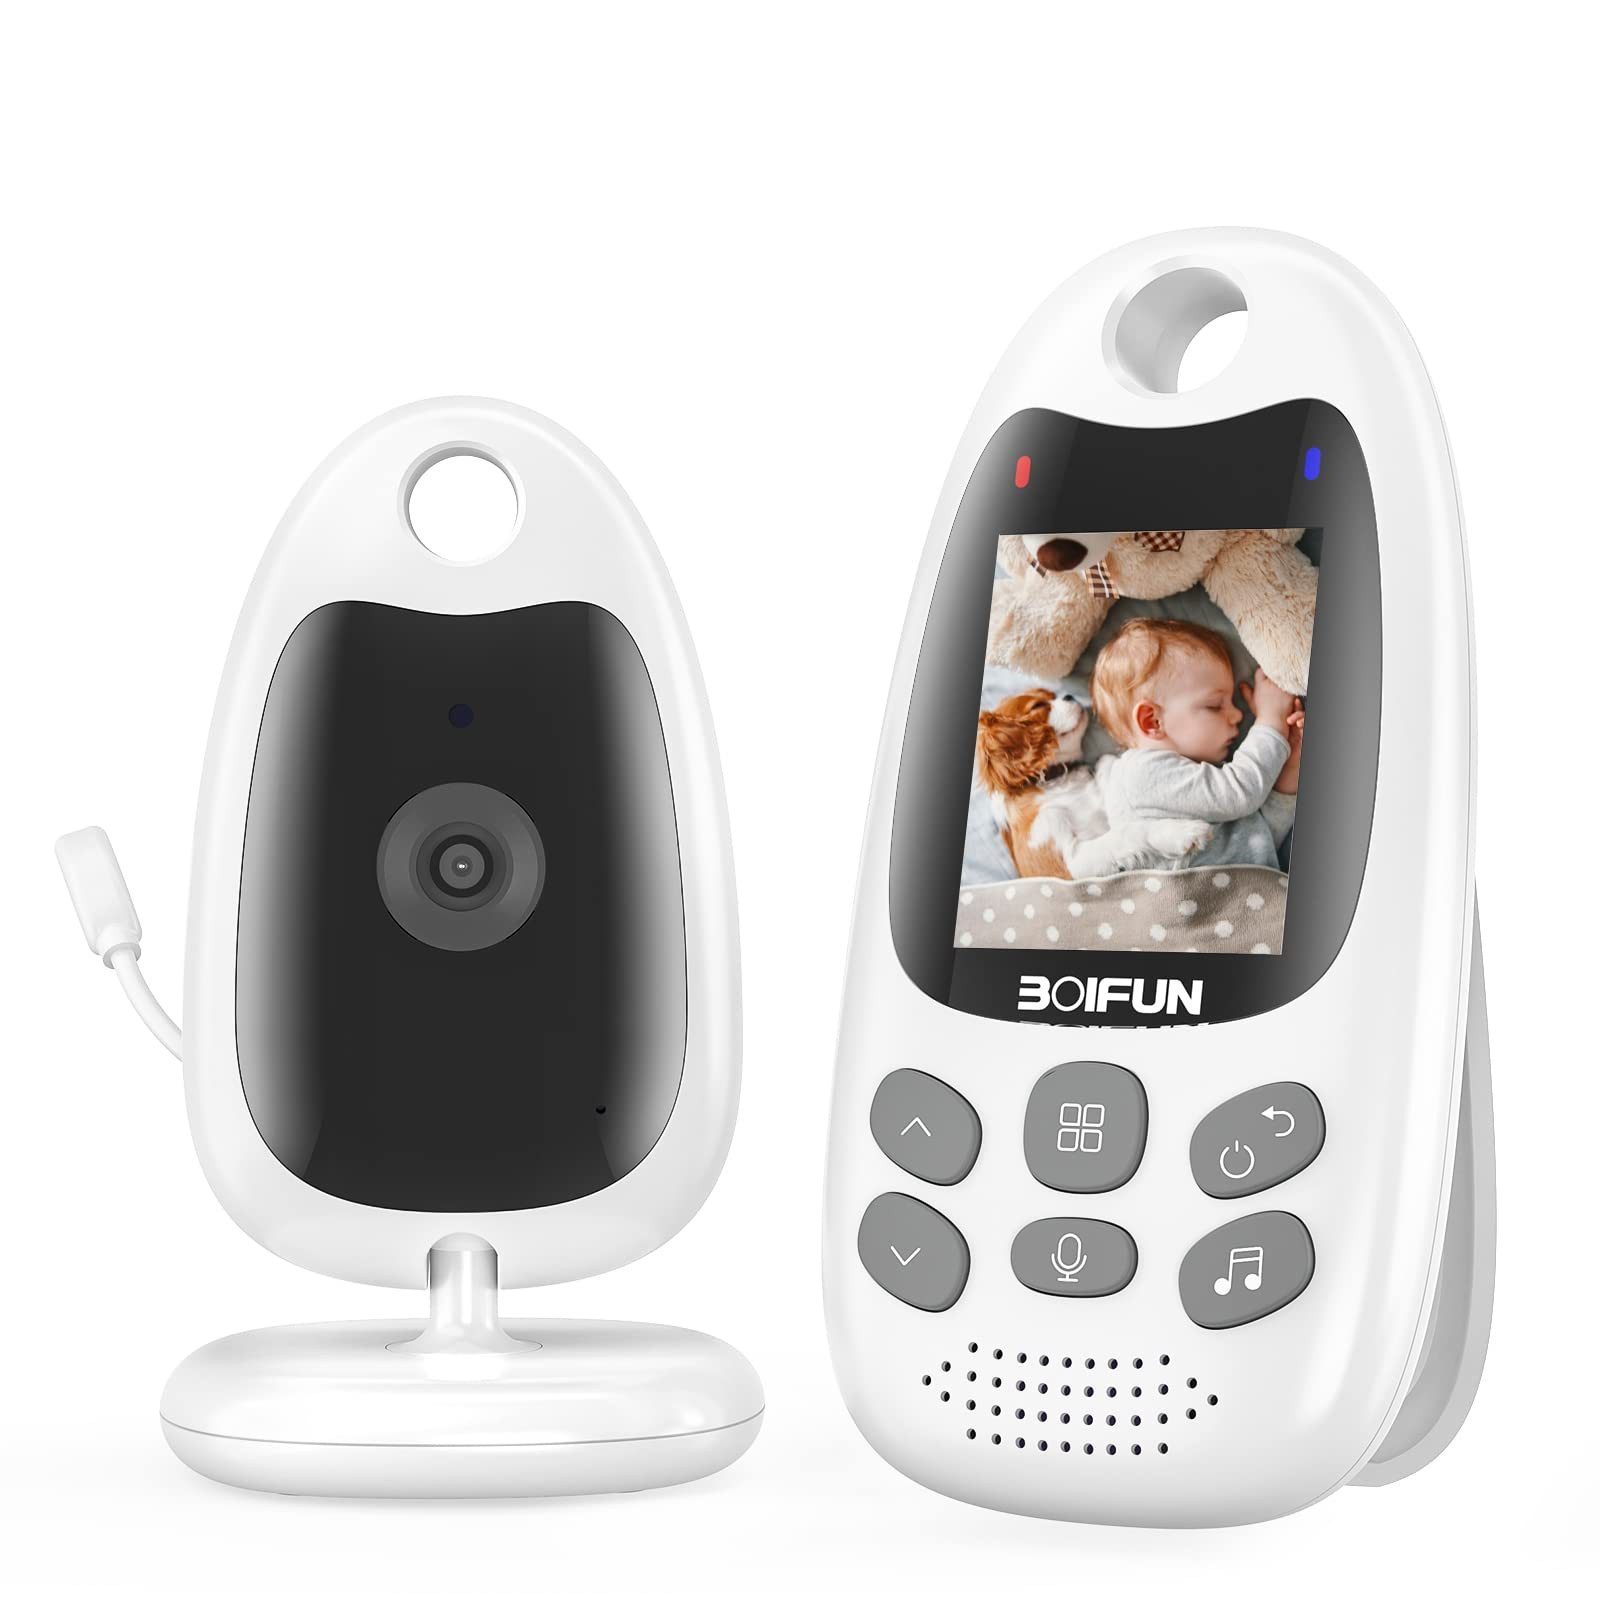 Boifun Babyphone Babyphone mit Kamera Tragbares Nachtsicht-Video-Babyfon 2,4 Ghz, Vox-Funktion Temperatursensor,Anti-Rauschen,Lange Akkulaufzeit, 1-tlg., Intelligentes Standby Baby monitor Gegensprechanlage Schlaflieder, Fütterungserinnerung,2,0-Zoll-LCD-Display